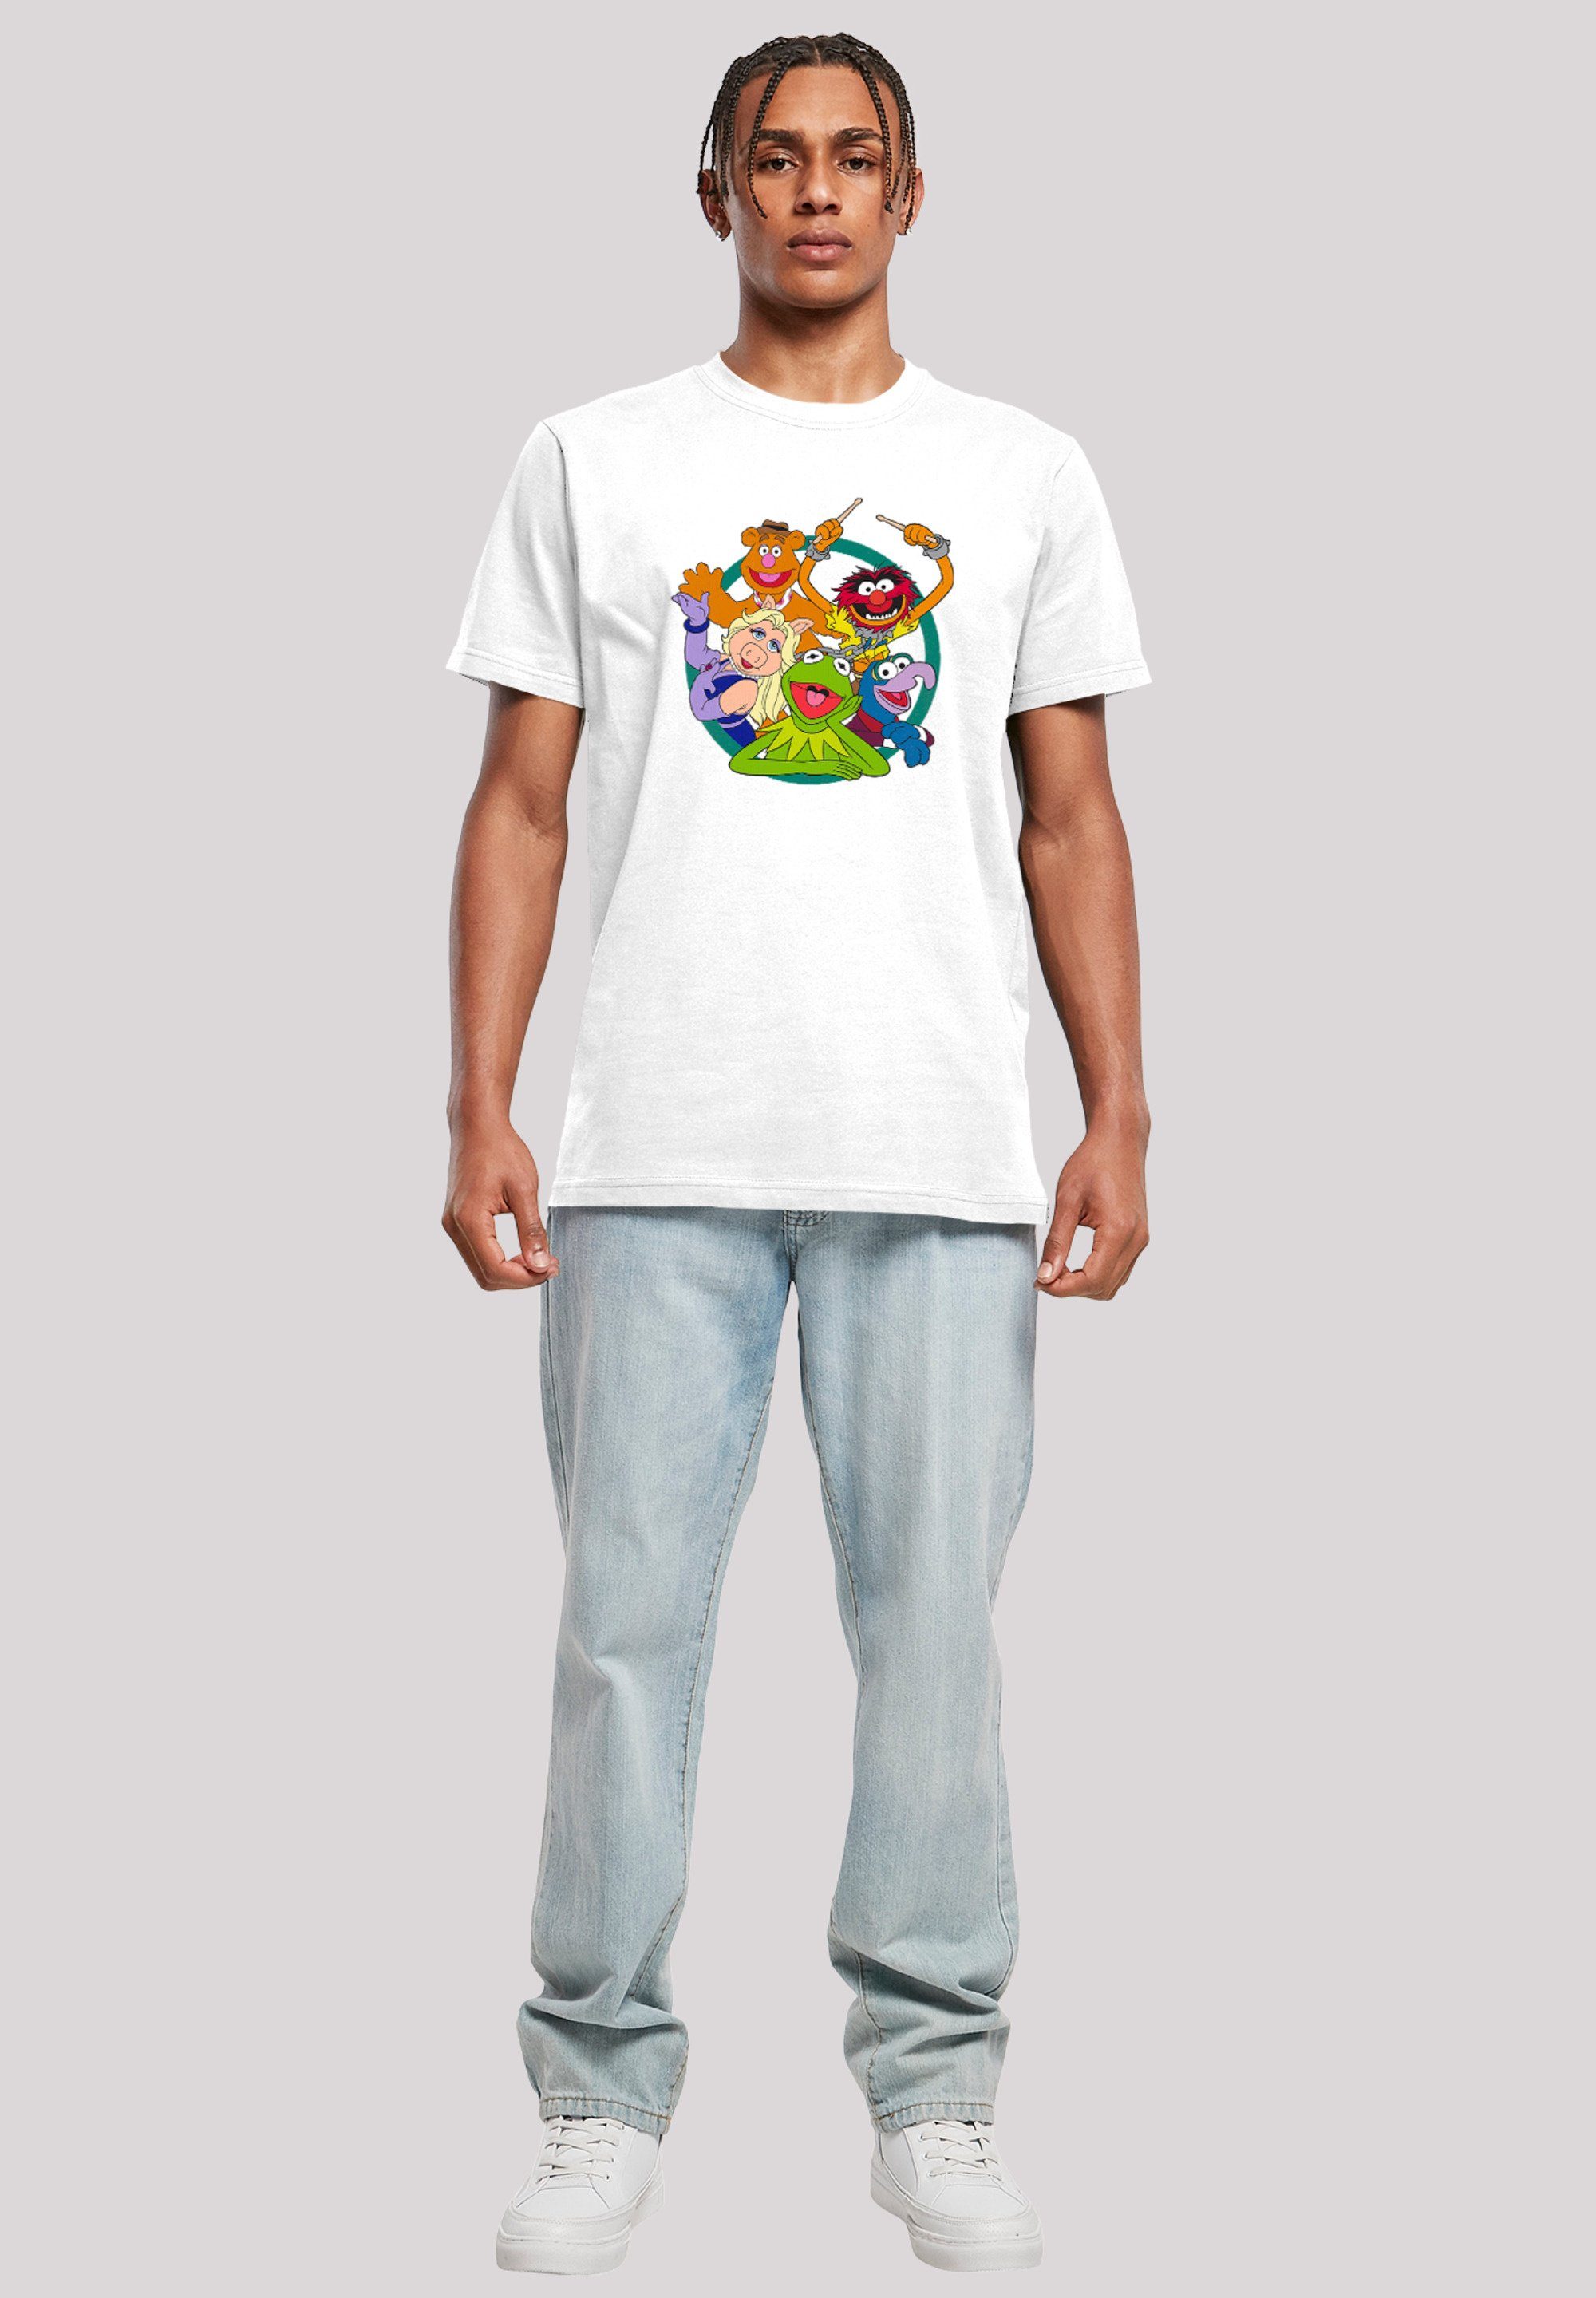 F4NT4STIC T-Shirt Disney Muppets Group weiß Circle Herren,Premium Merch,Regular-Fit,Basic,Bedruckt